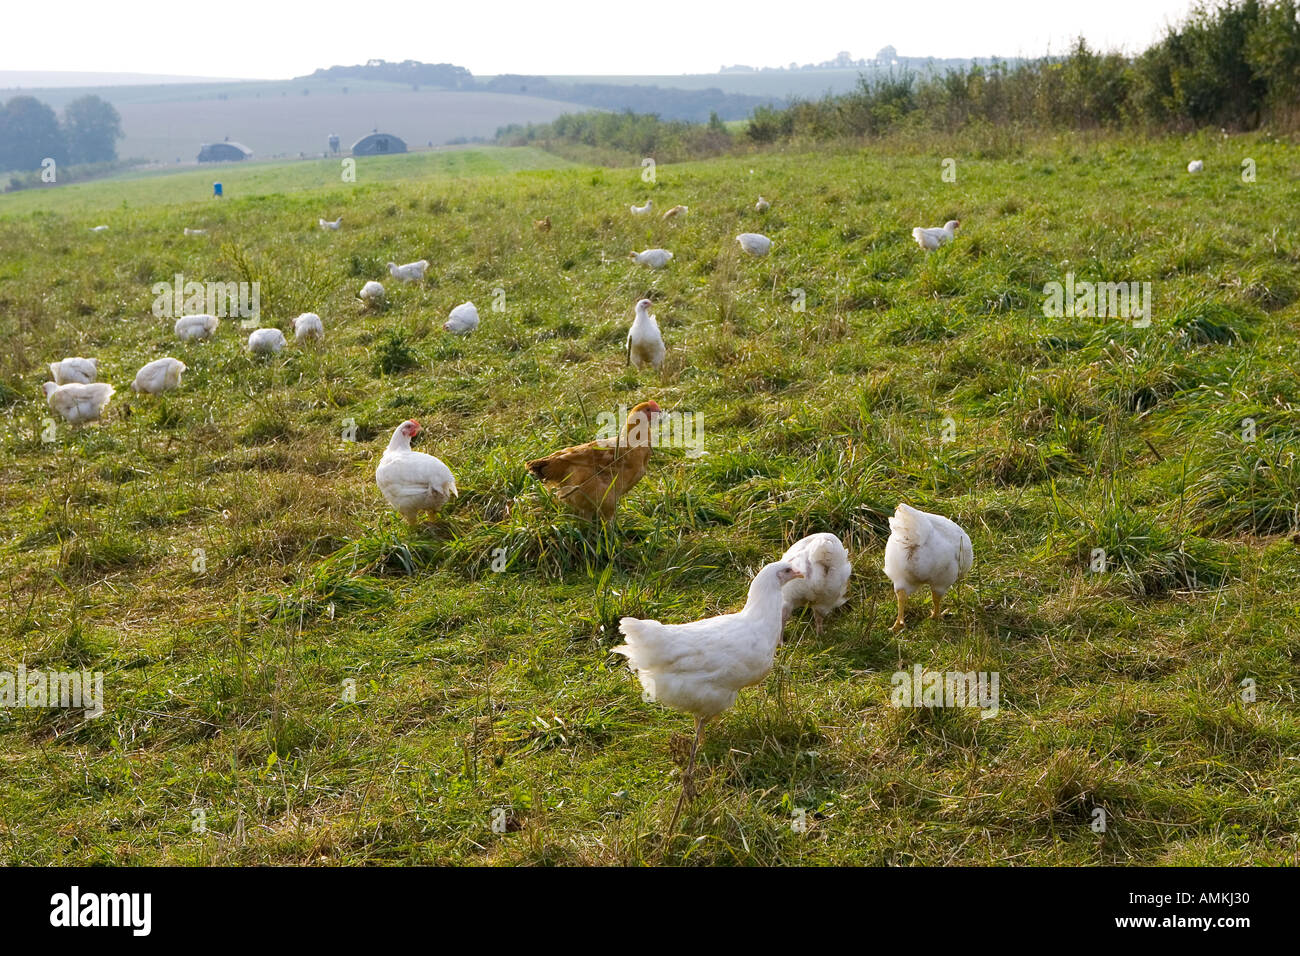 Freilaufenden Hühnern Rasse Isa 257 herumlaufen frei an der Sheepdrove Bio Bauernhof Lambourn in England Stockfoto